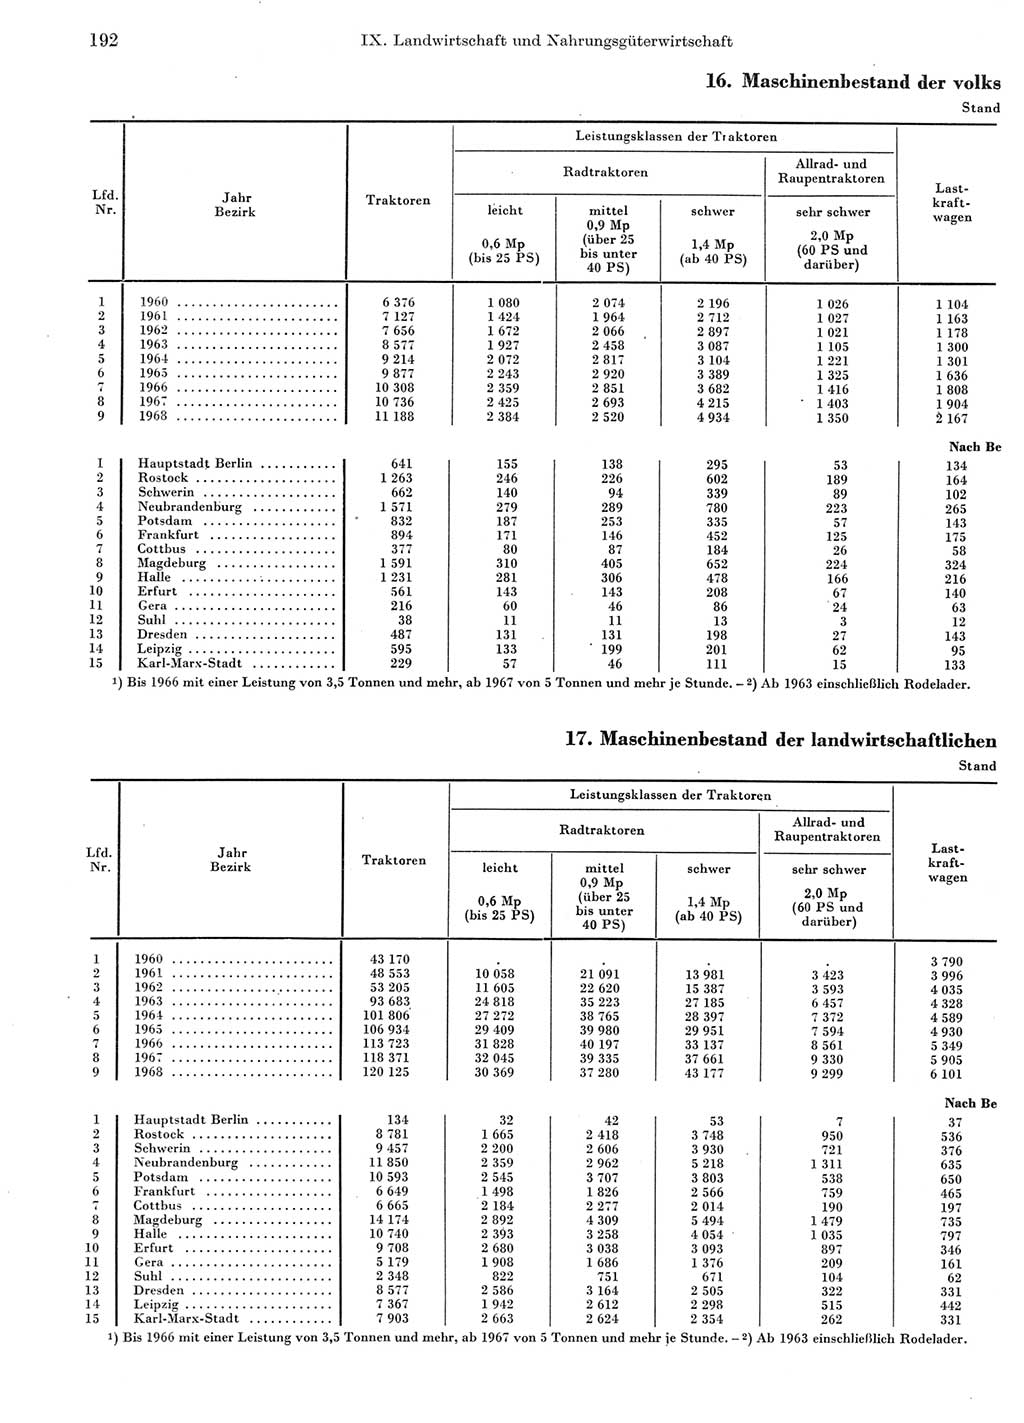 Statistisches Jahrbuch der Deutschen Demokratischen Republik (DDR) 1969, Seite 192 (Stat. Jb. DDR 1969, S. 192)